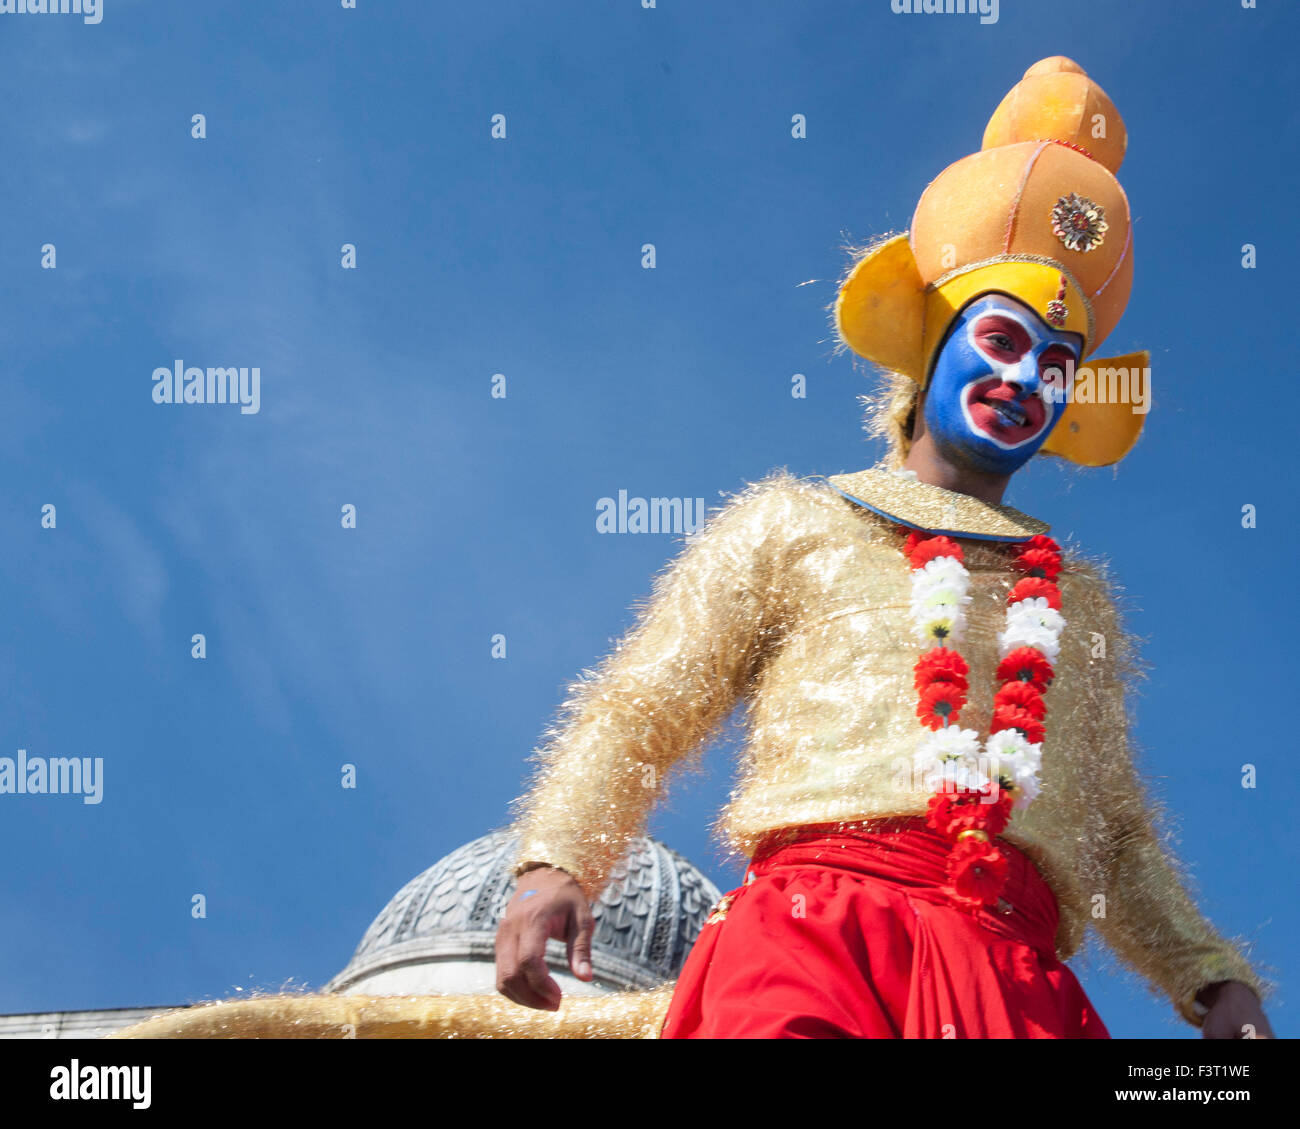 Londres, Royaume-Uni. 11 octobre, 2015. Diwali, le Festival culturel indien de lumière et de joie, Trafalgar Square, City of Westminster, London, England, UK. Tovy Adina : Crédit/Alamy Live News Banque D'Images